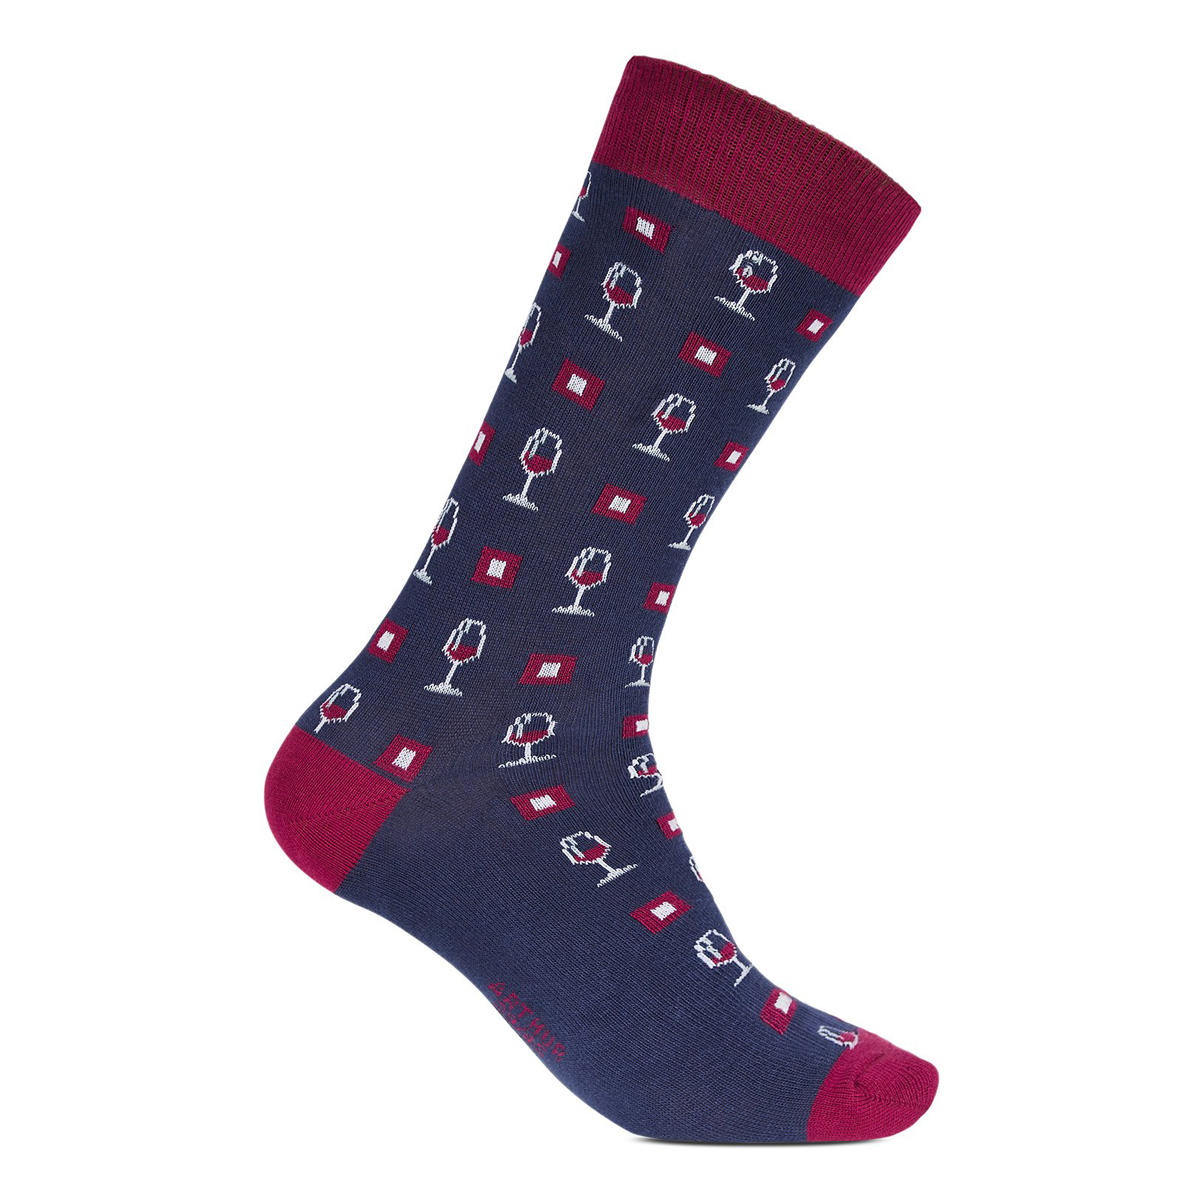 chaussettes arthur en coton marine avec dessins "verre de vin" rouges brodés